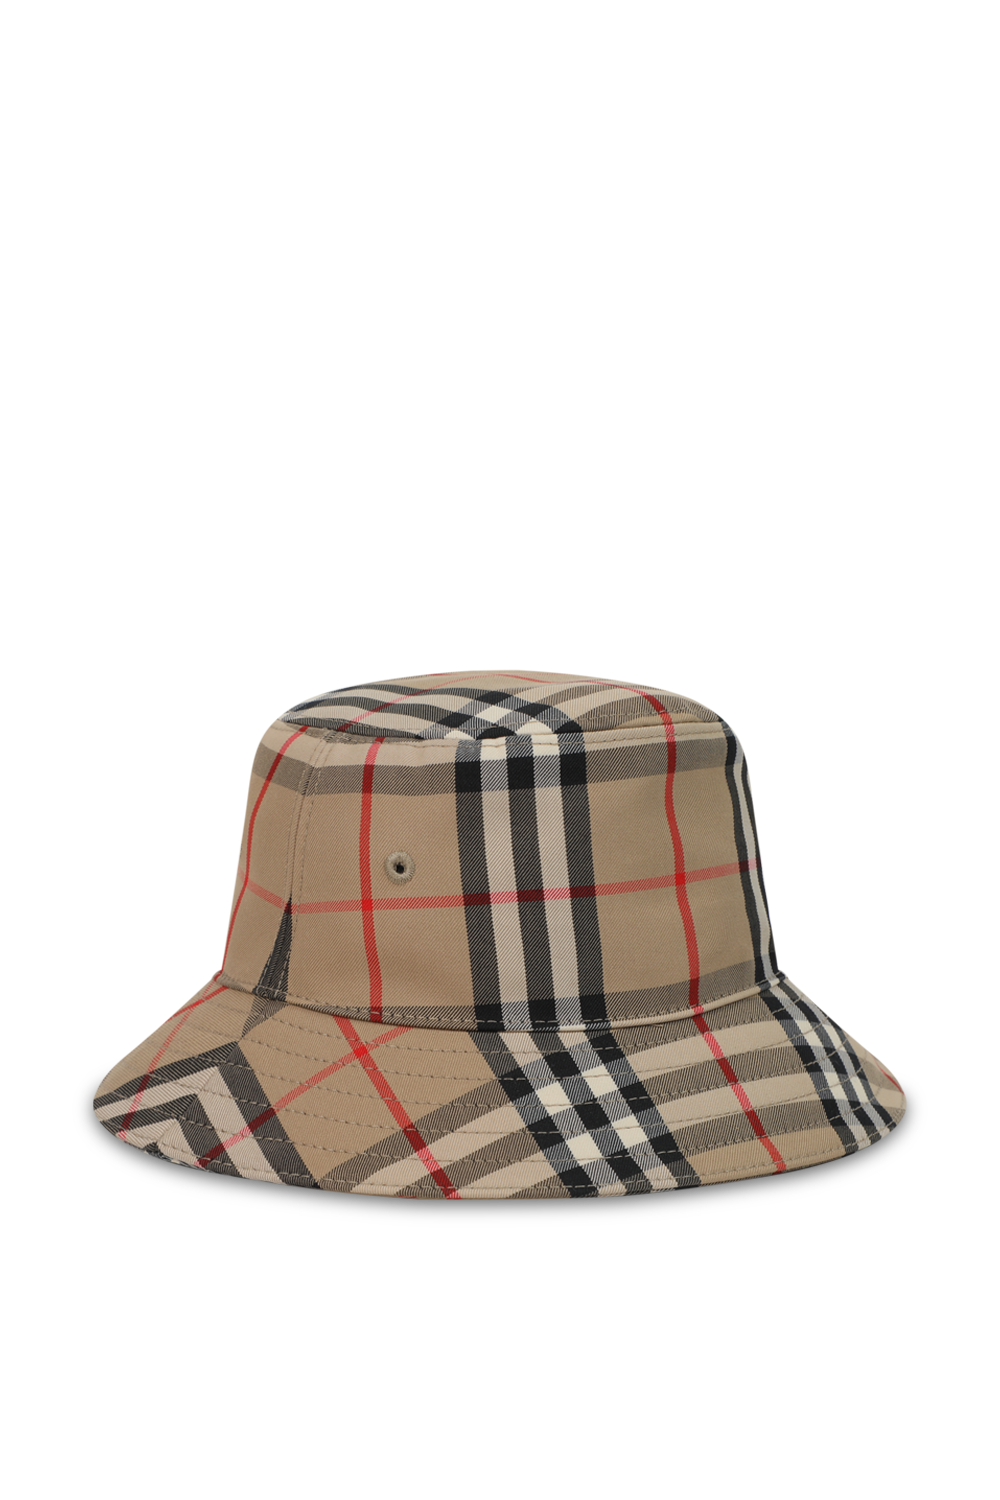 כובע באקט בז' עם הדפס משבצות אייקוני BURBERRY